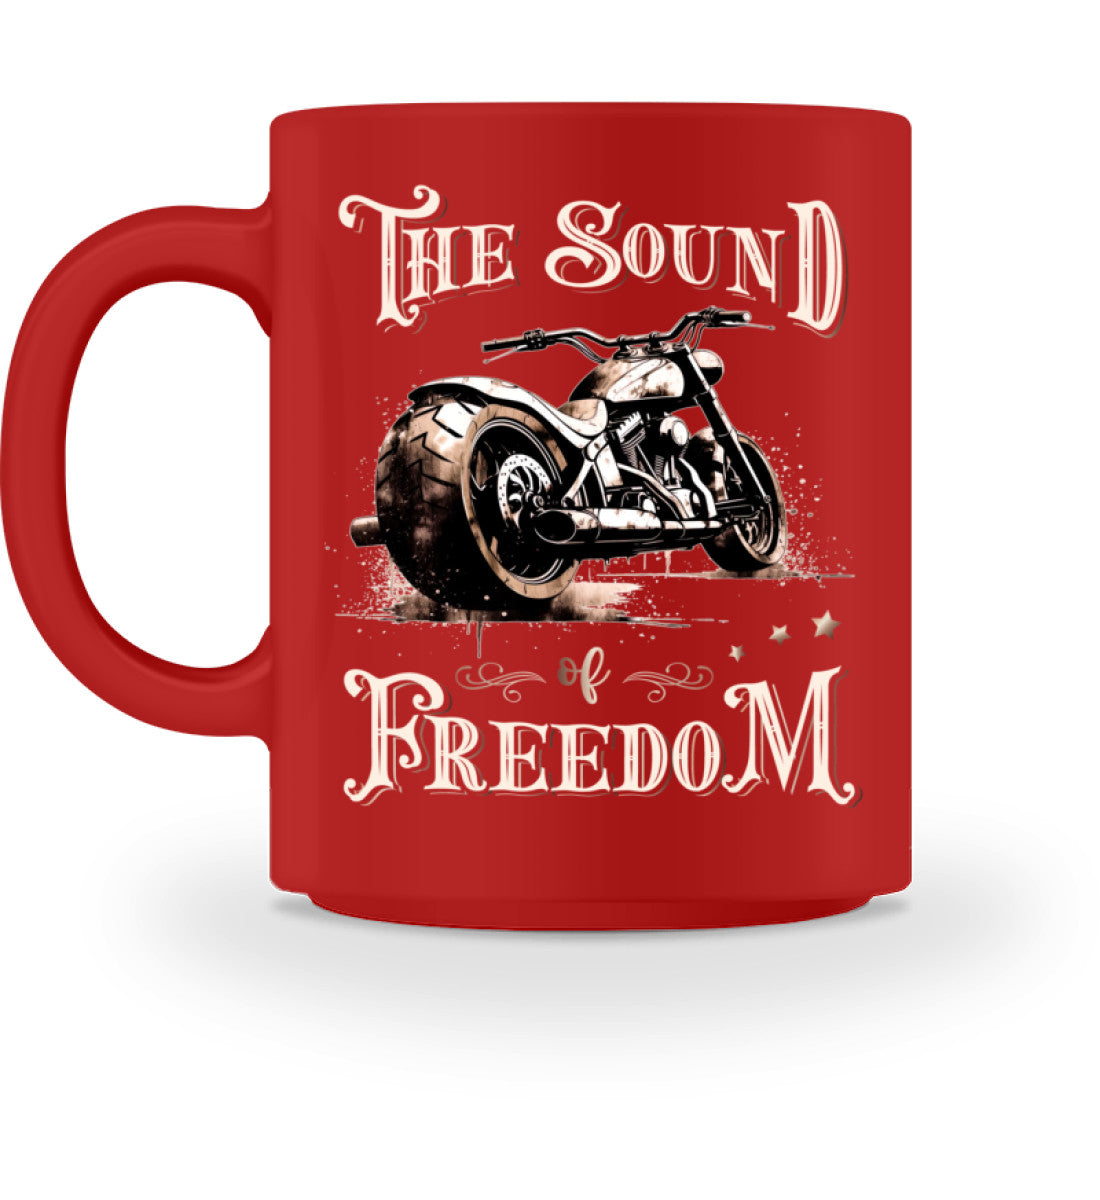 Eine Tasse für Motorradfahrer von Wingbikers, mit dem beidseitigen Aufdruck, The Sound of Freedom, in rot.